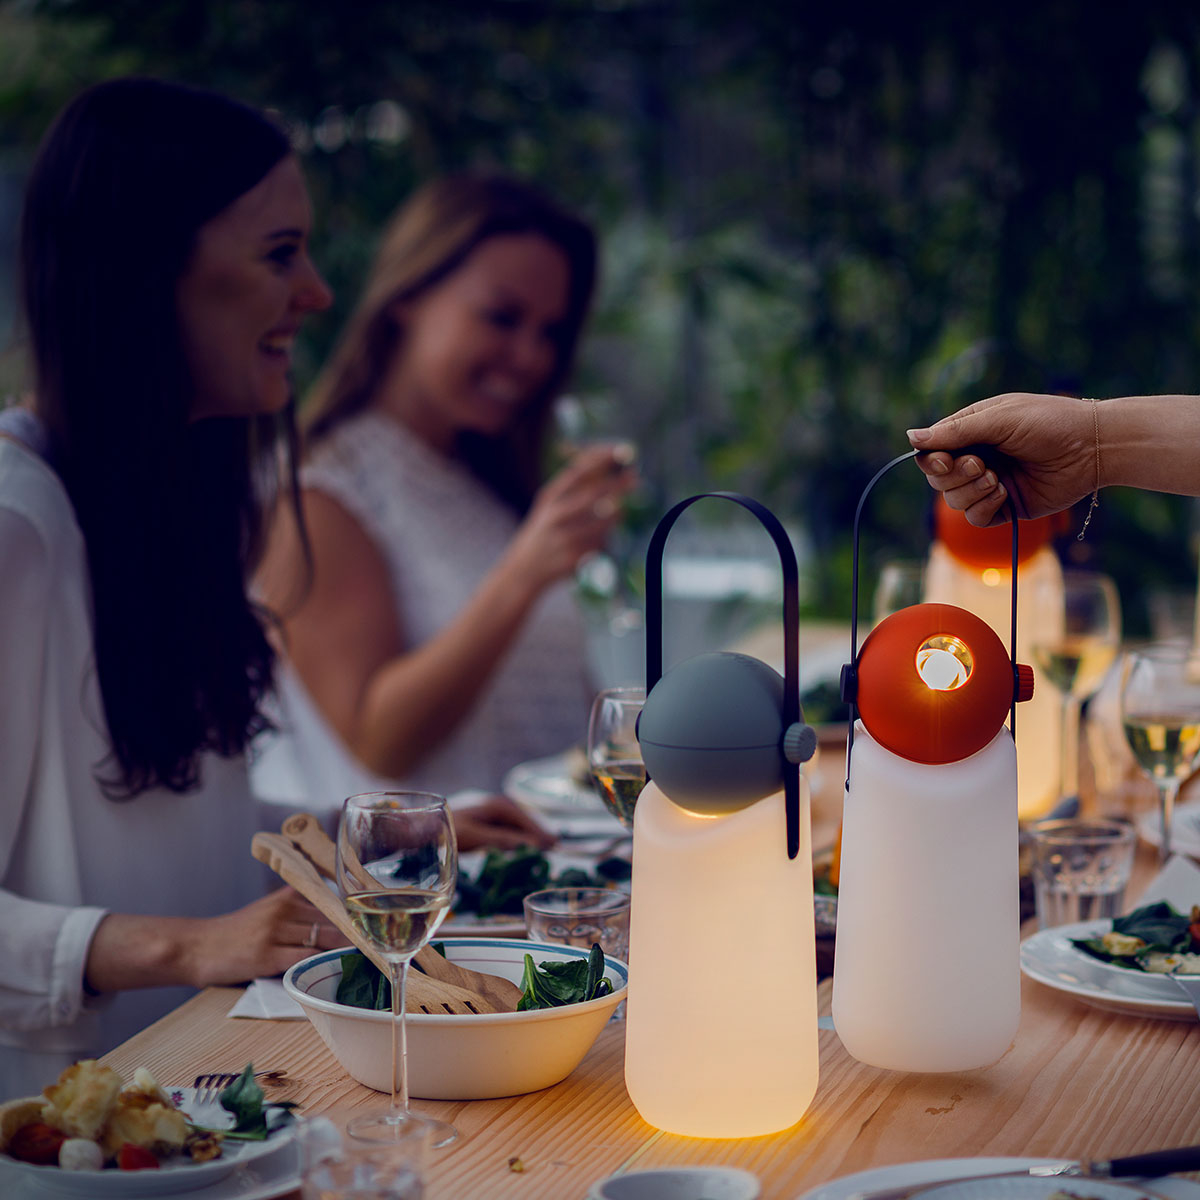 Weltevree Guidelight Tomato Red, een uniek ontworpen lamp voor buiten met dimbare LED module